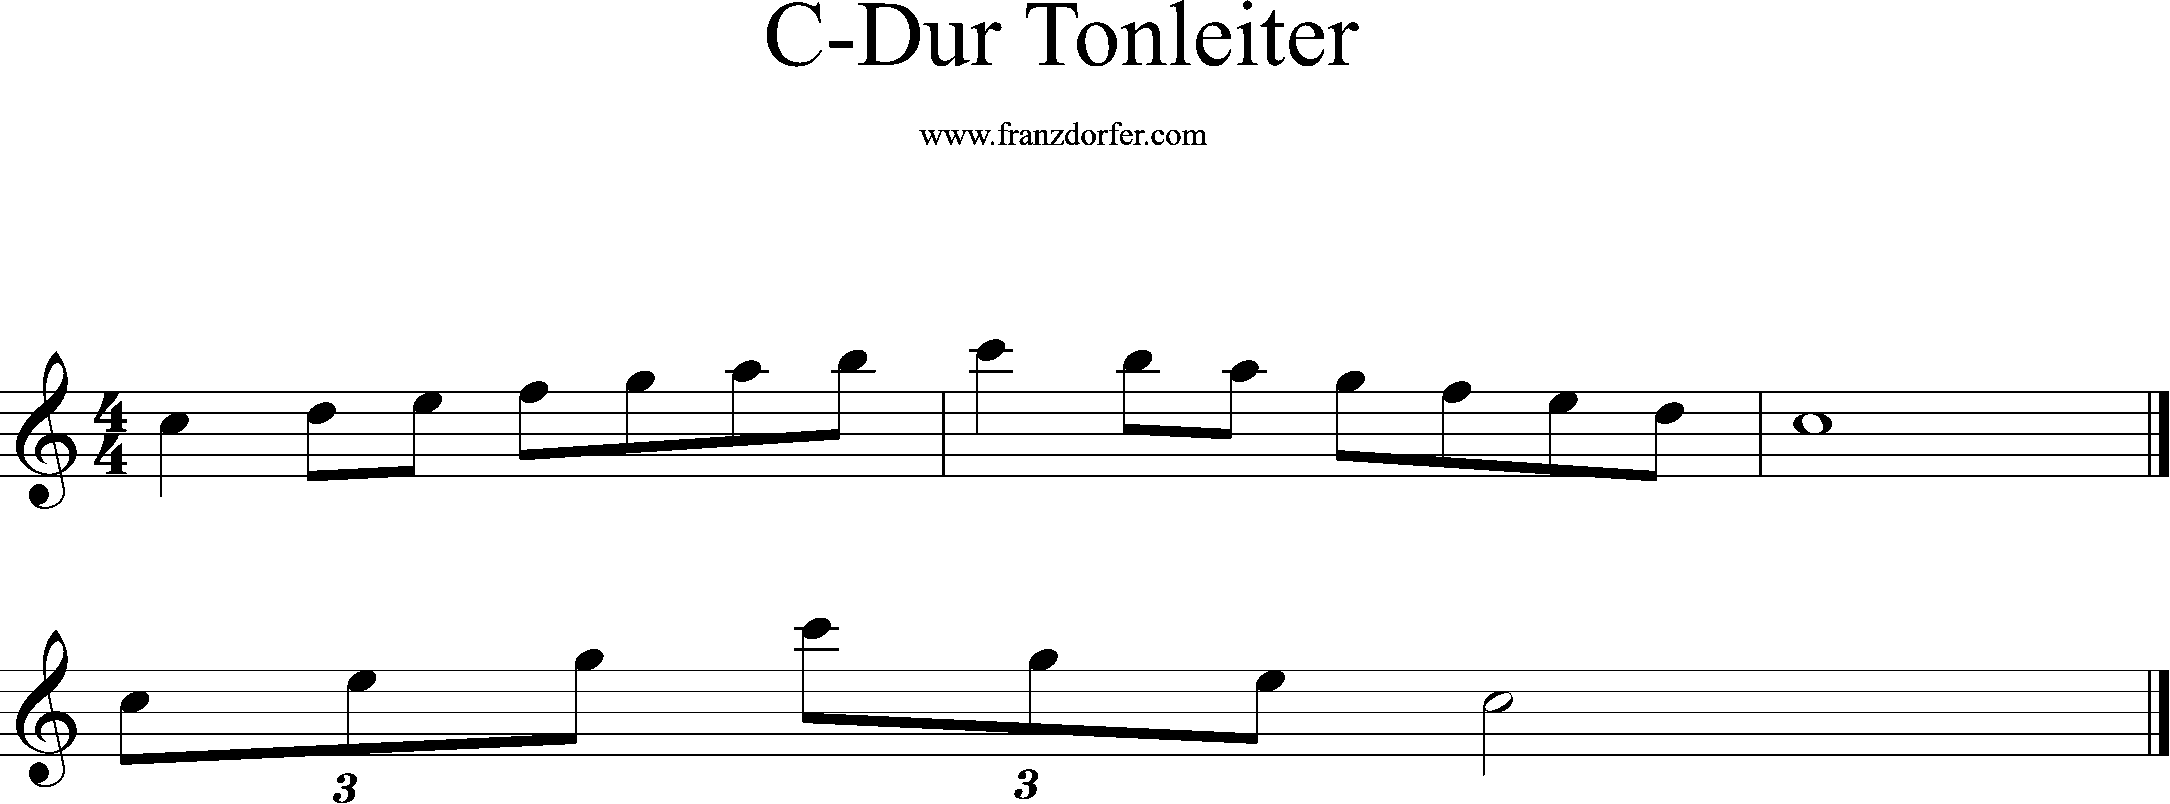 C-Dur, Tonleiter, c2-c3